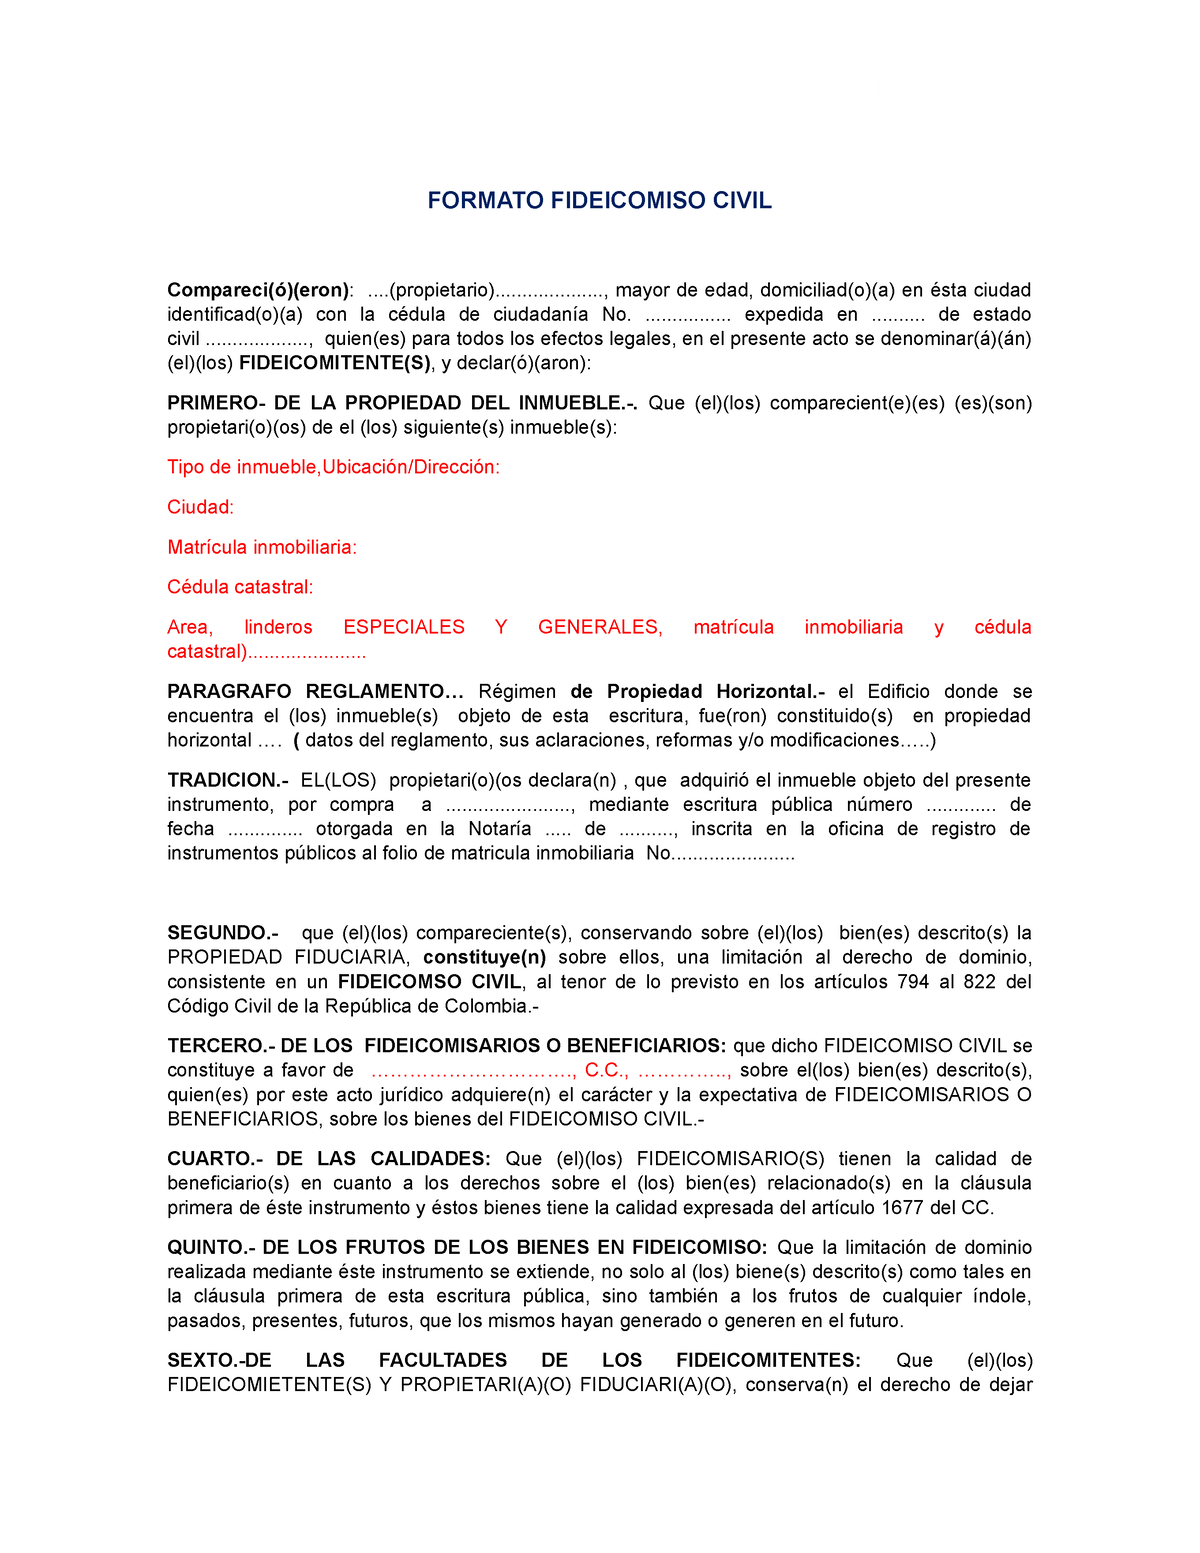 13 - formato de fideicomiso - FORMATO FIDEICOMISO CIVIL Compareci(ó)(eron)  : - Studocu